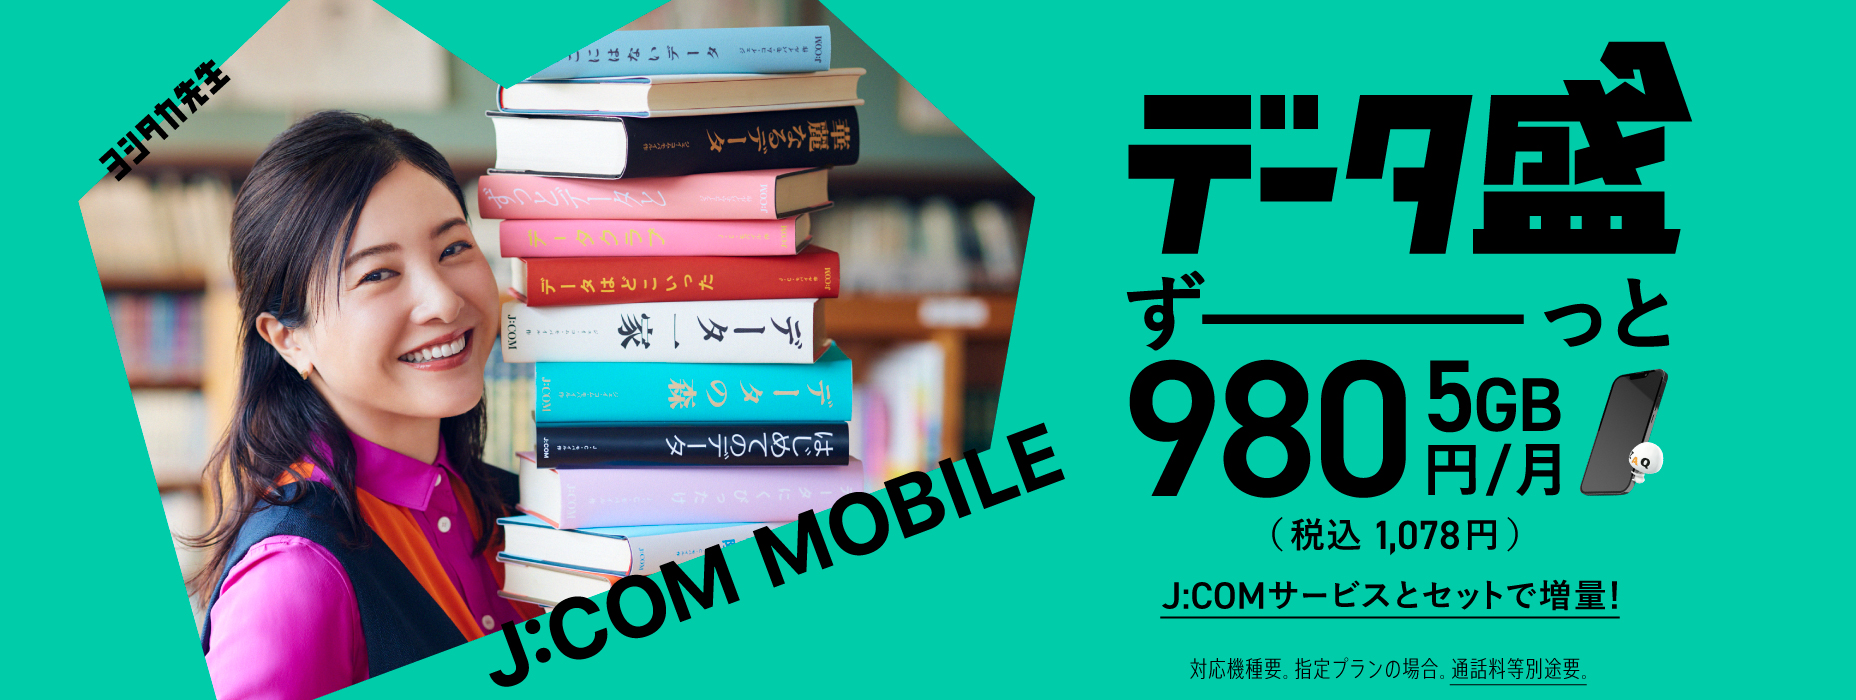 数据丰富的J:COM Mobile 5GB 980日元/月（含税1,078日元） 通过J:COM服务套装增加您的数据！需要兼容型号。对于指定的计划。需要单独支付通话费。